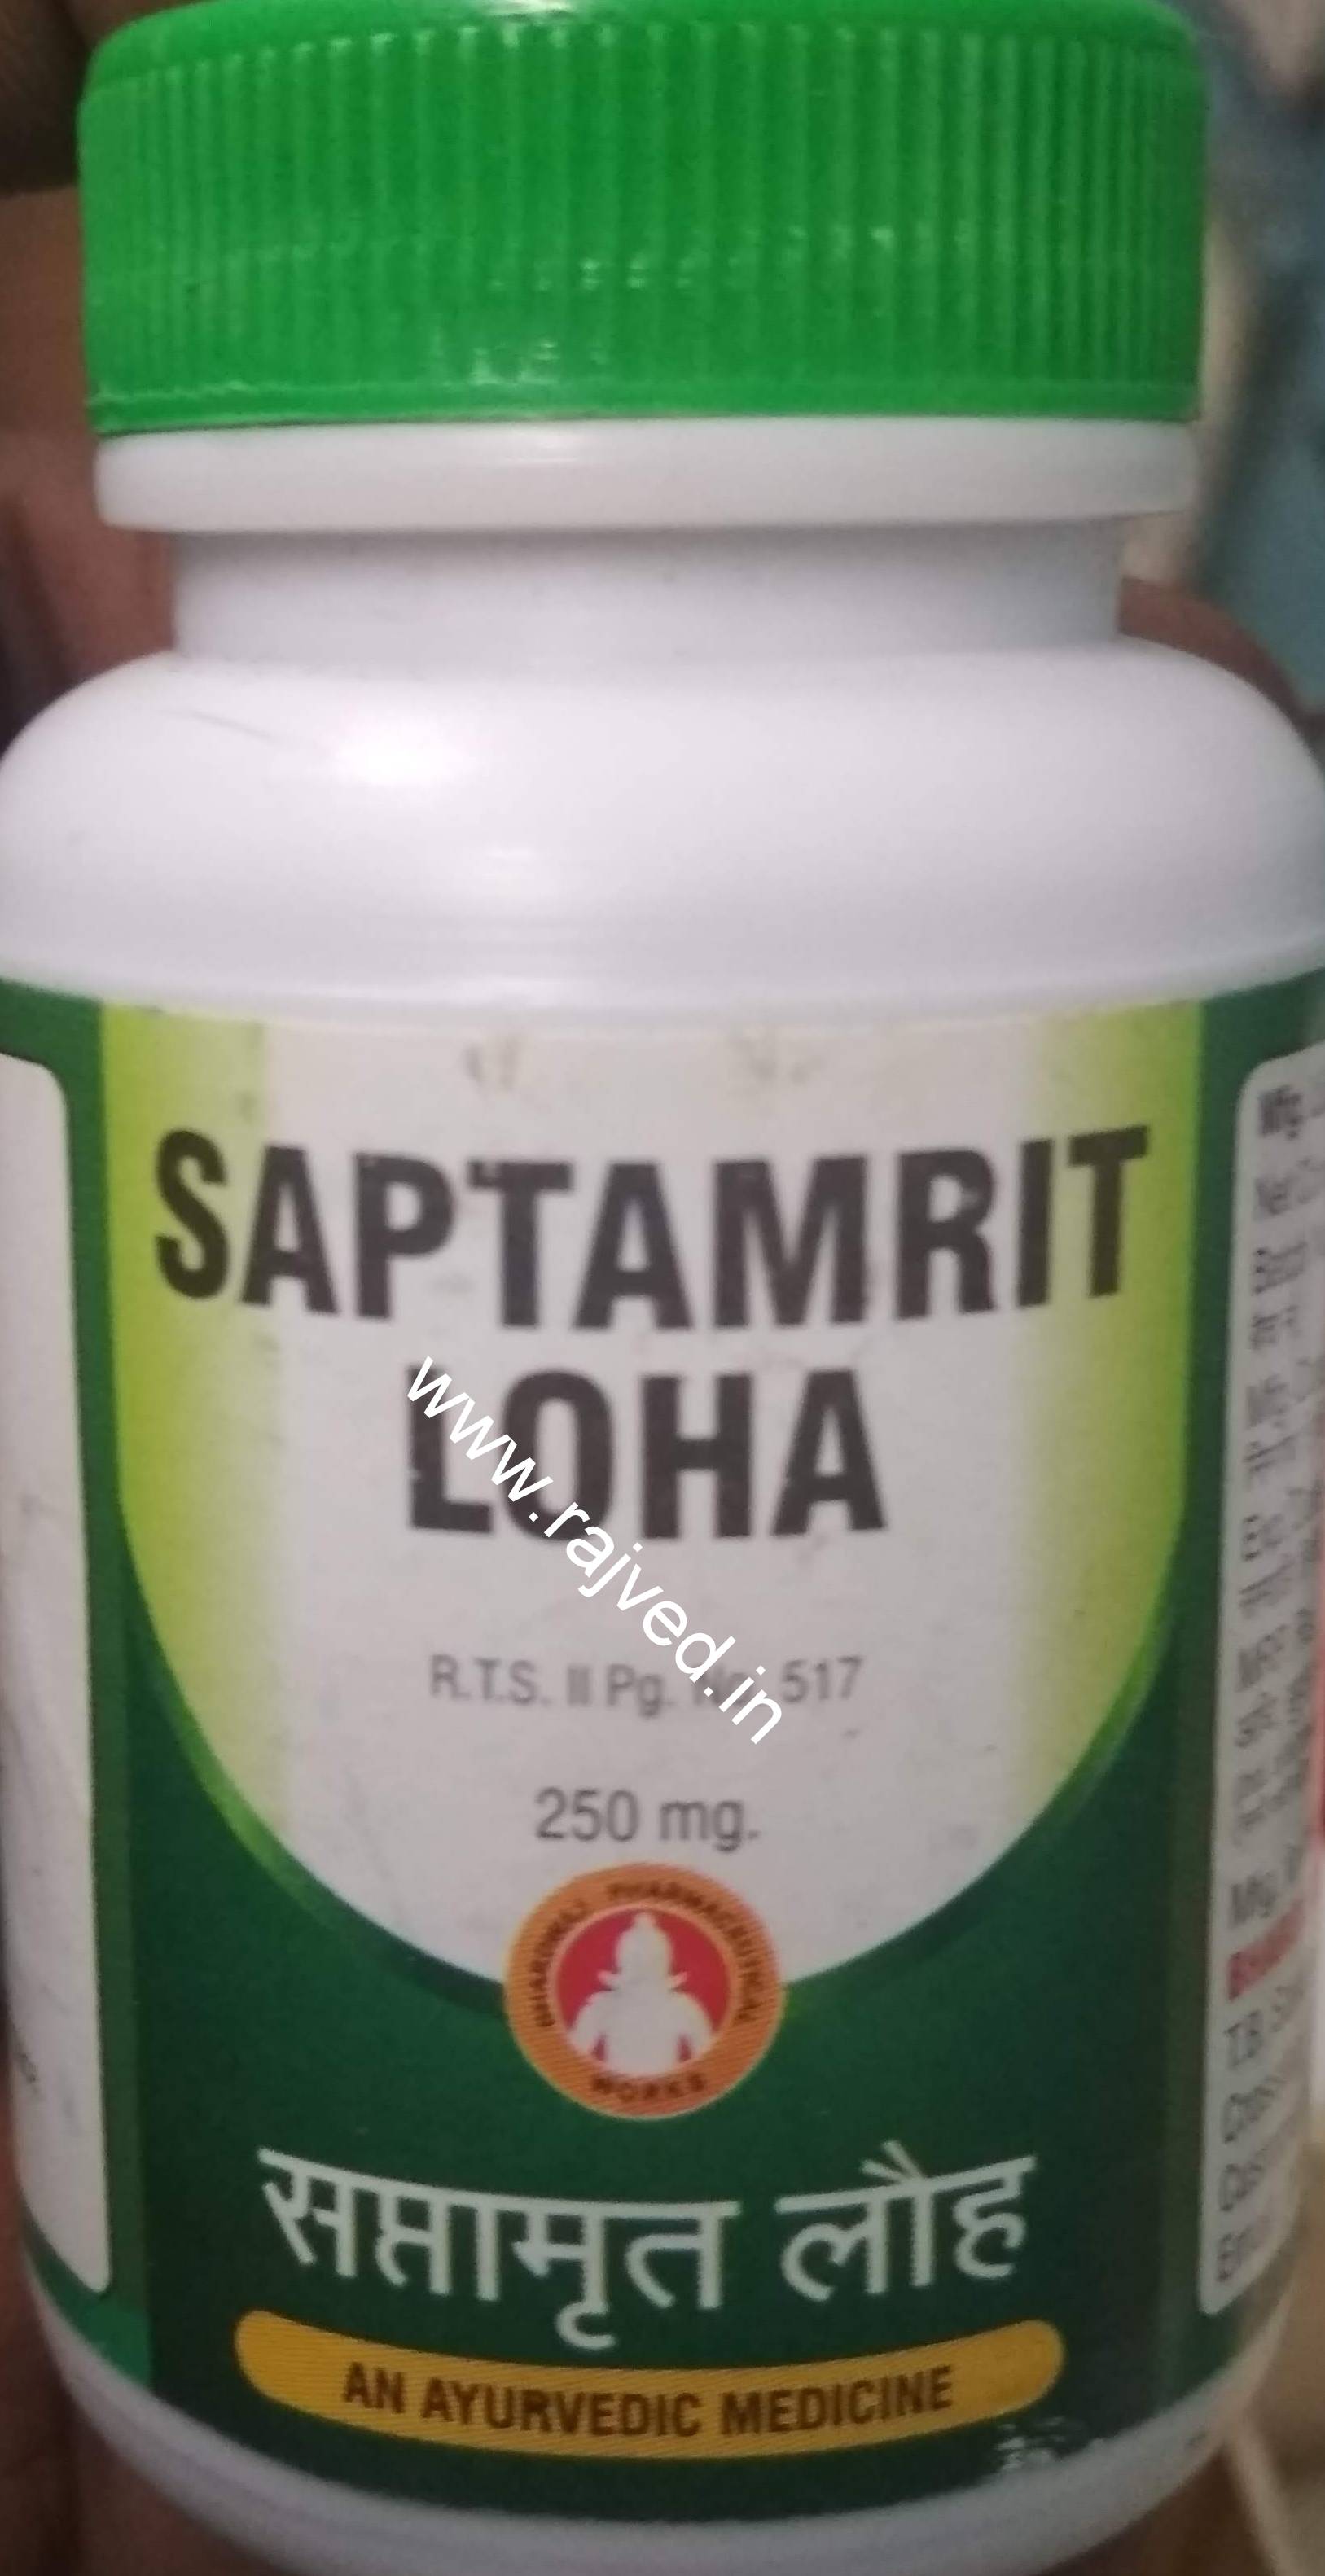 saptamrit loha 1kg upto 20% off bhardwaj pharmaceuticals indore